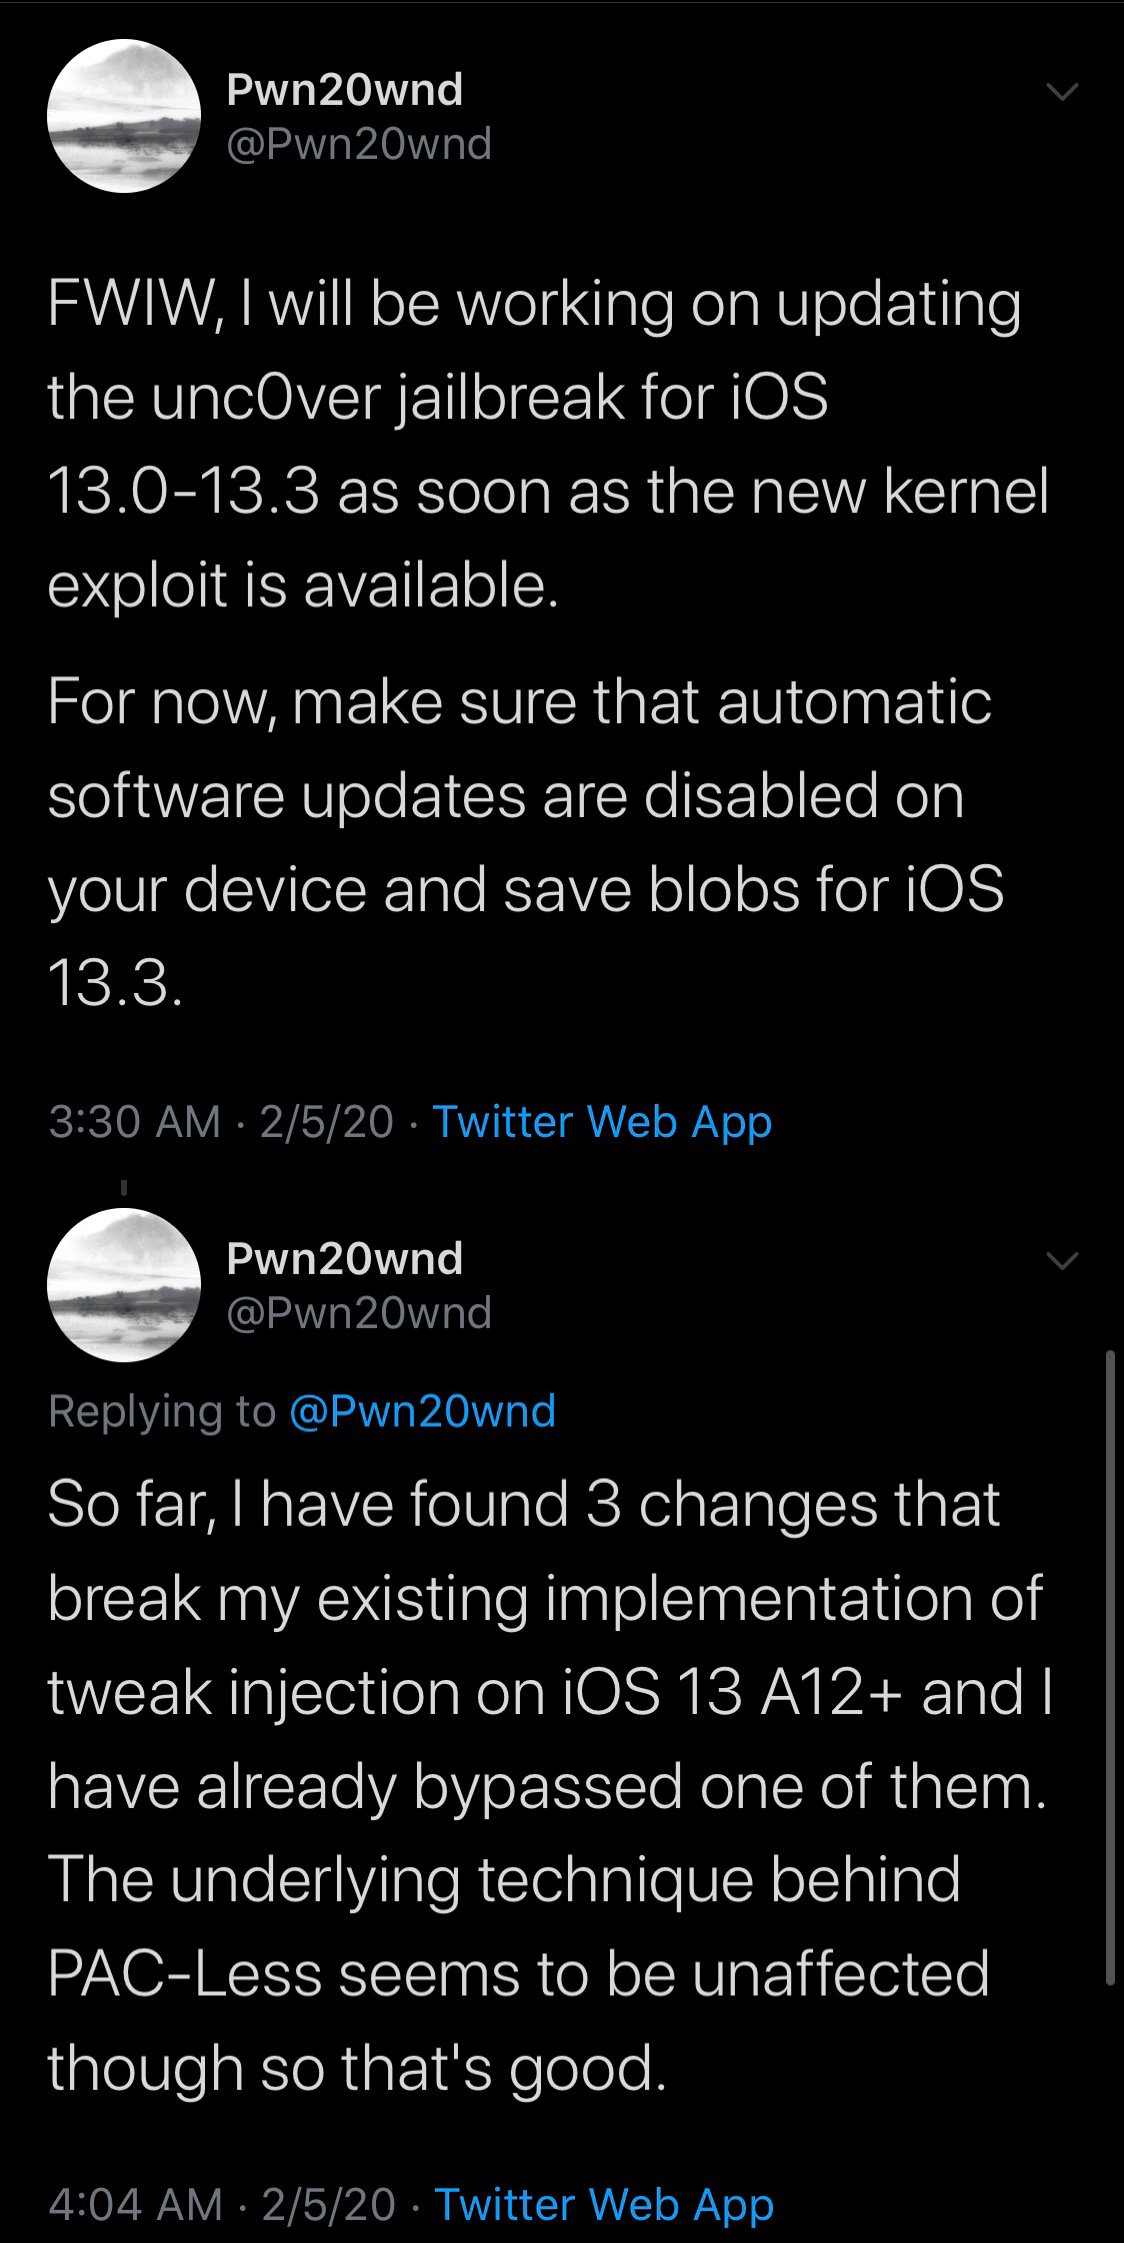 Pwn20wnd mengungkapkan rencana untuk memperbarui unc0ver untuk iOS 13.0-13.3 dengan eksploitasi Brandon Azad 3